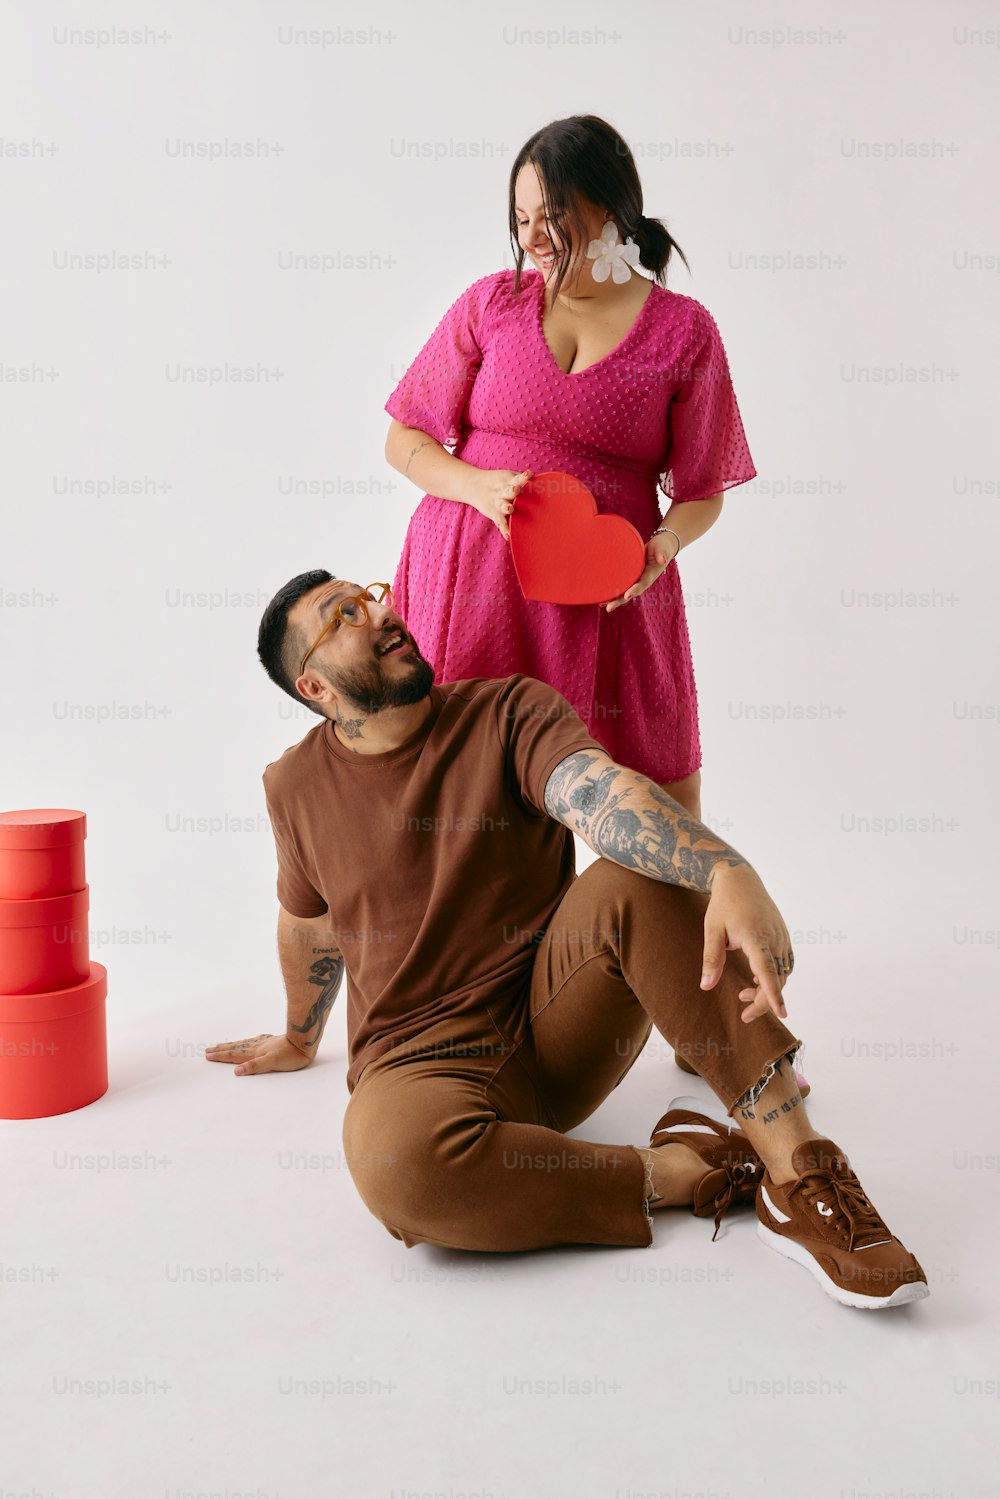 Un hombre sosteniendo un frisbee rojo junto a una mujer